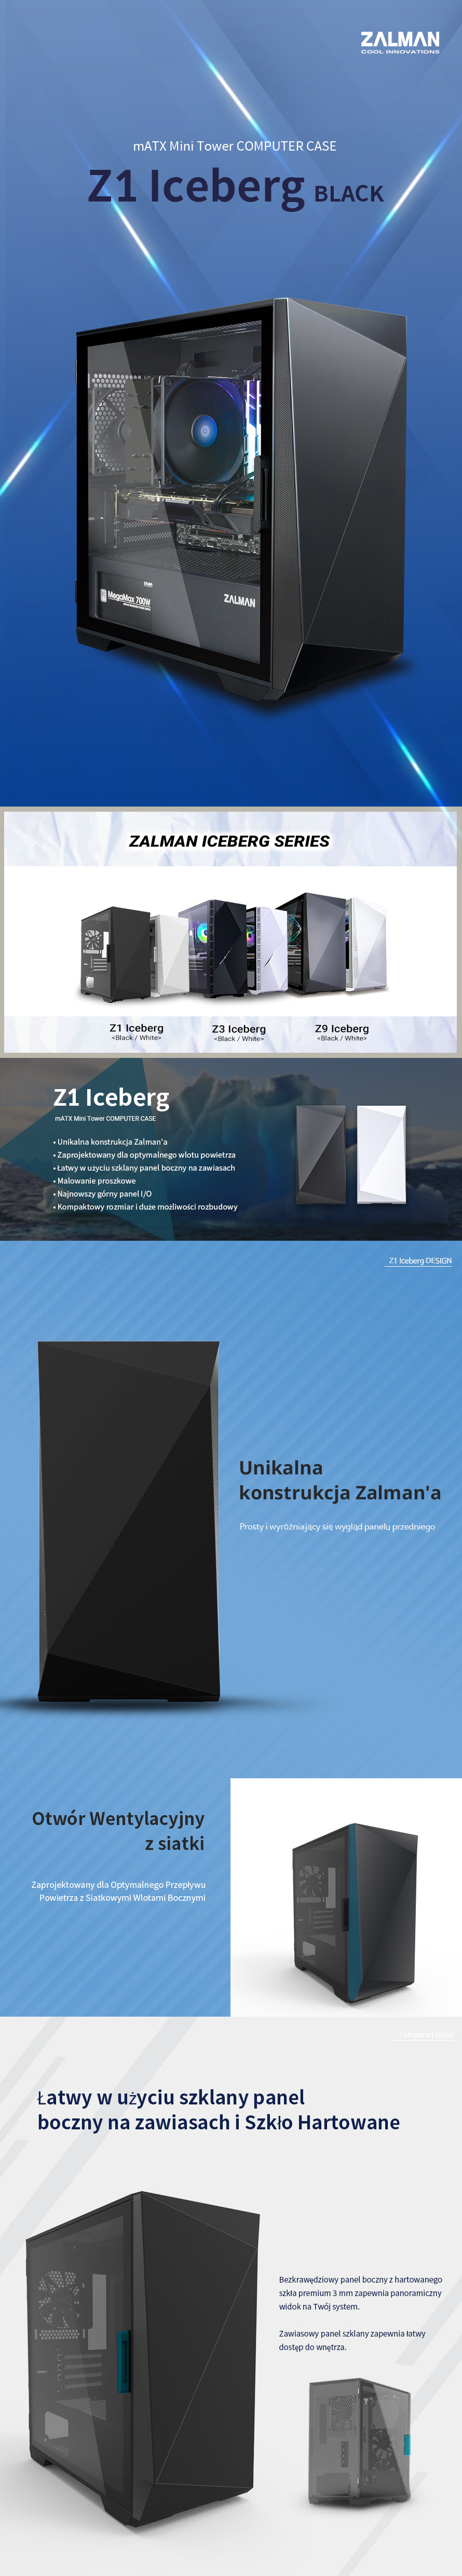 Z1 Iceberg Bk Pol 01 1